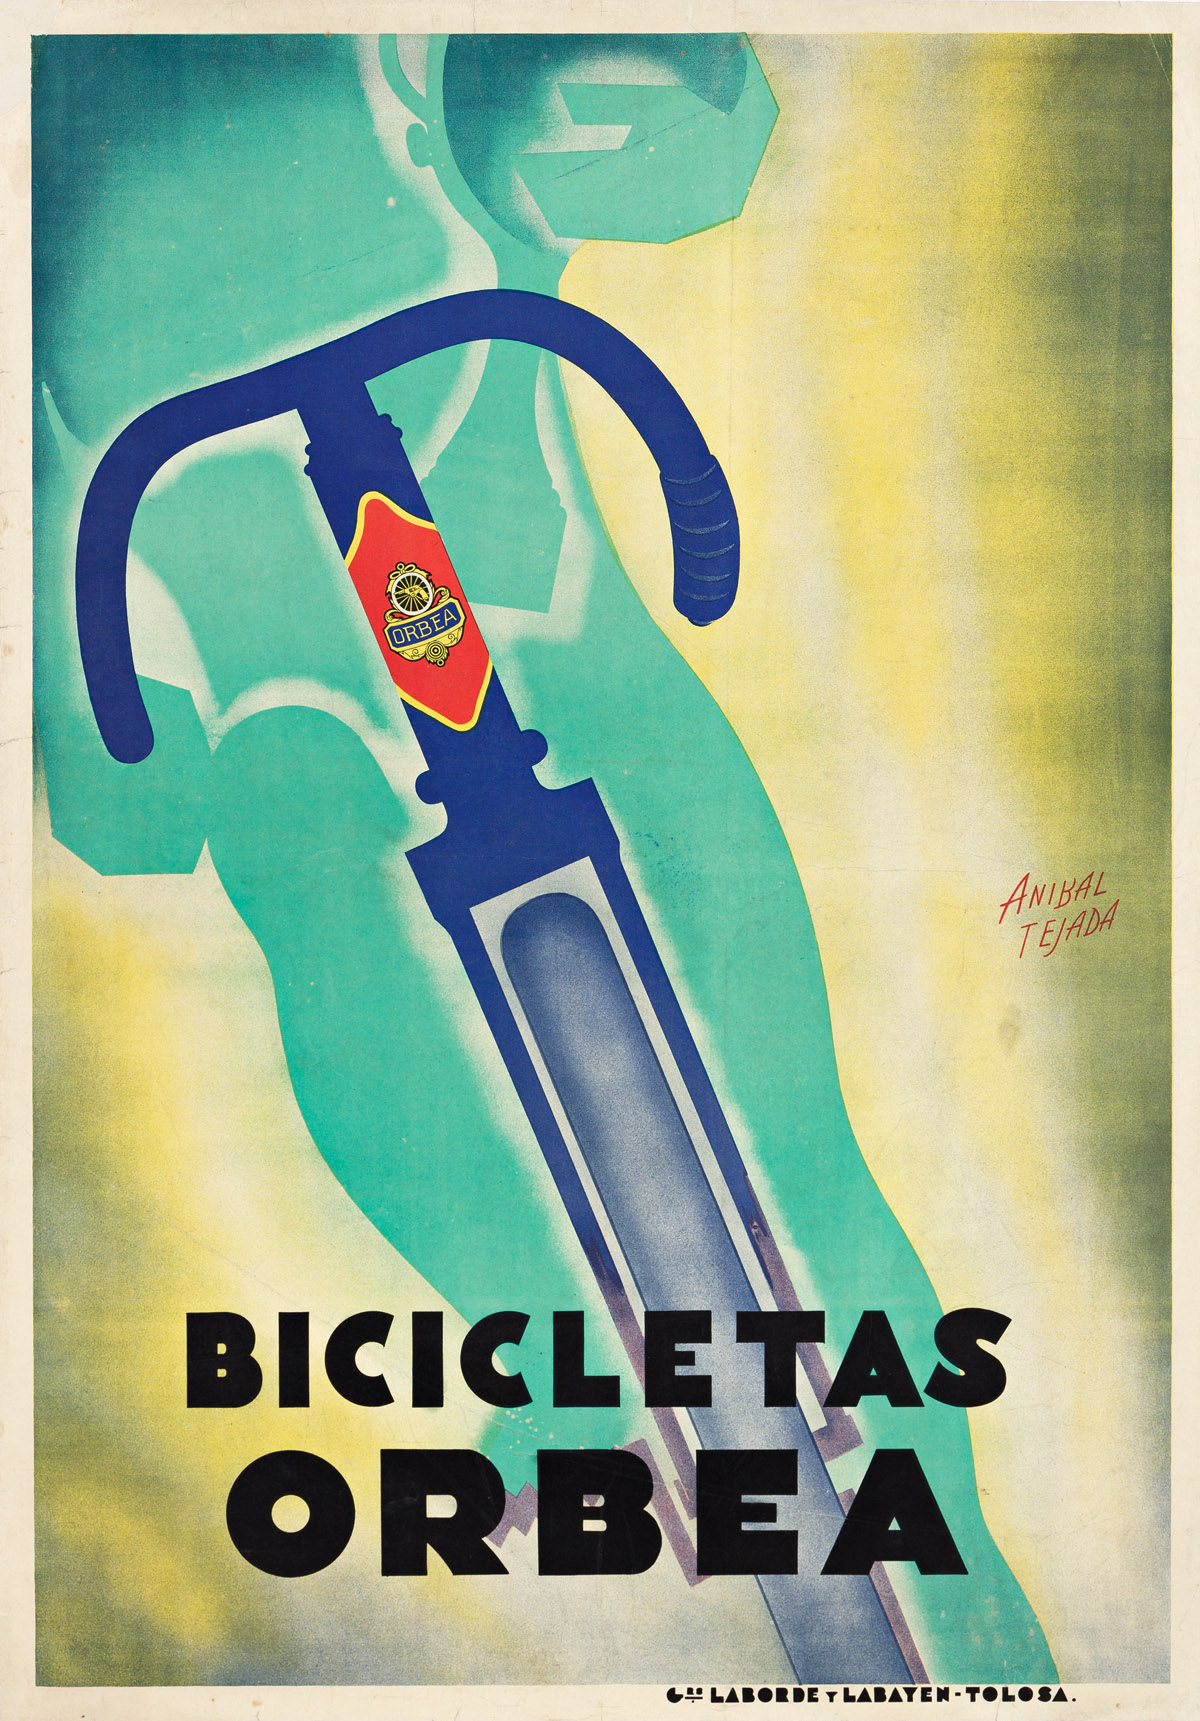 ANIBAL TEJADA (1897-?).  BICICLETAS ORBEA. 1933. 39¼x27½ inches, 99½x69¾ cm. Laborde y Labayan, Tolosa.